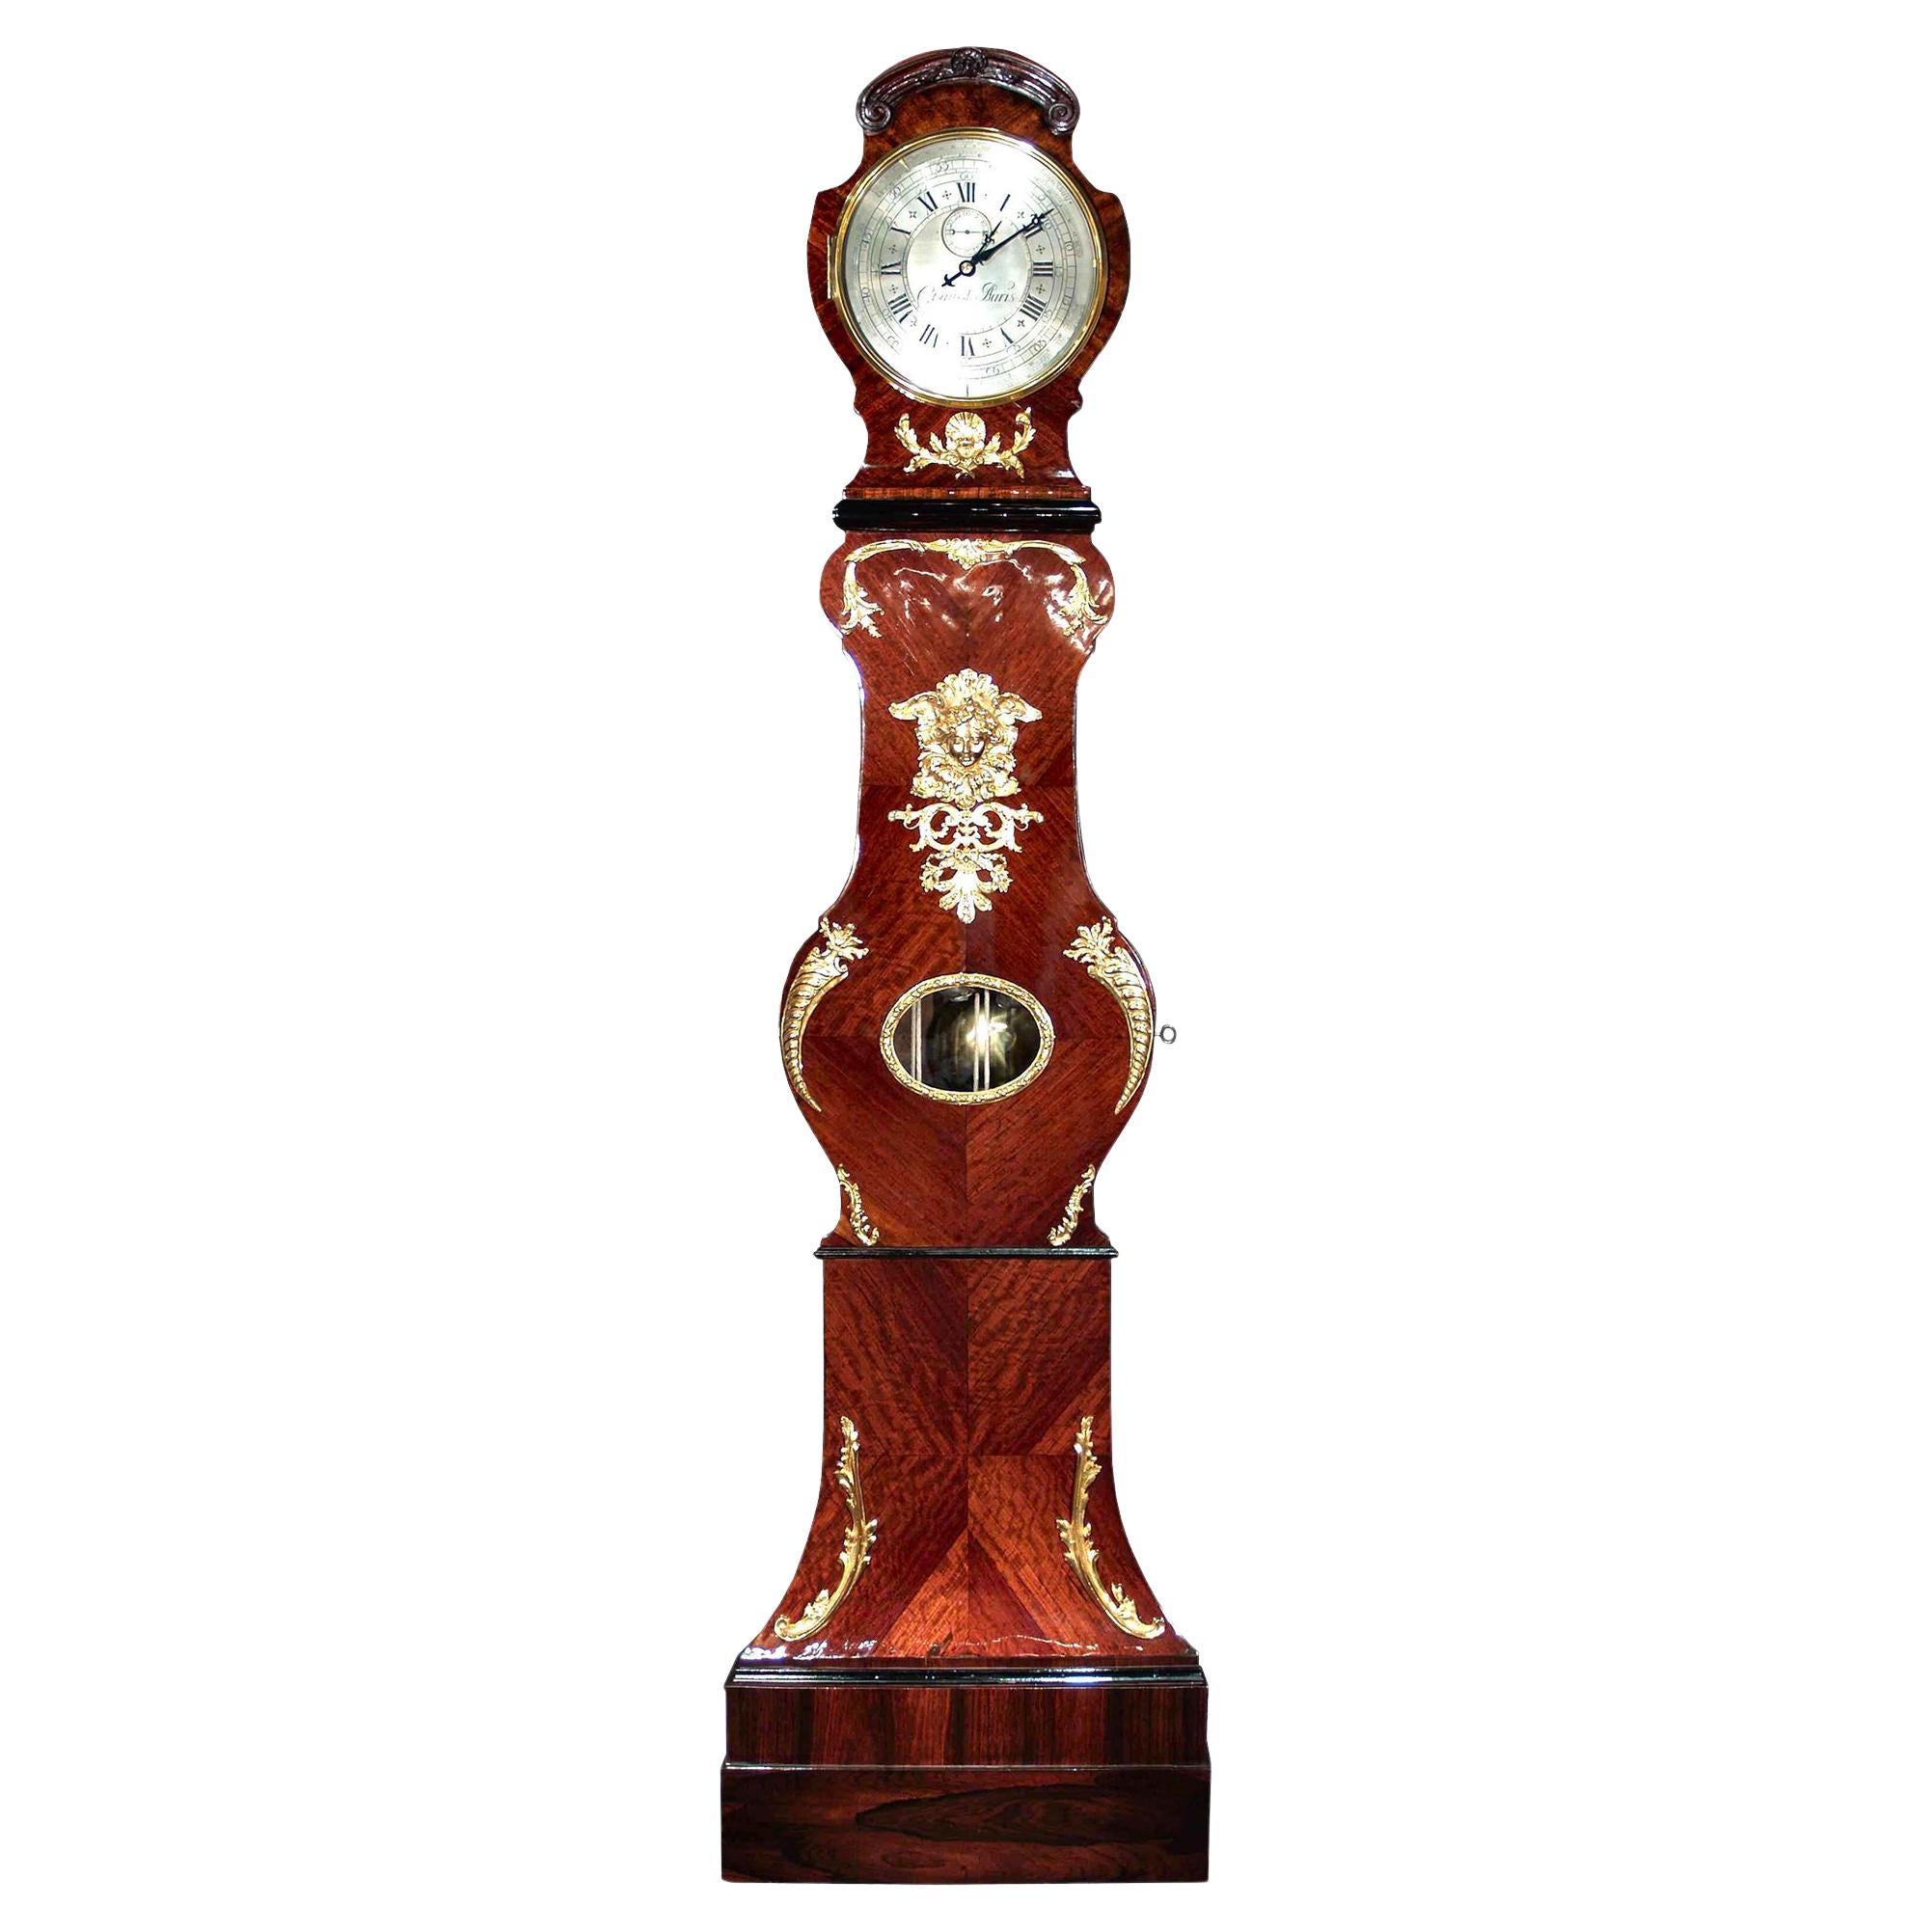 Reloj de caja alta francés de mediados del siglo XVIII, época Luis XV, hacia 1740